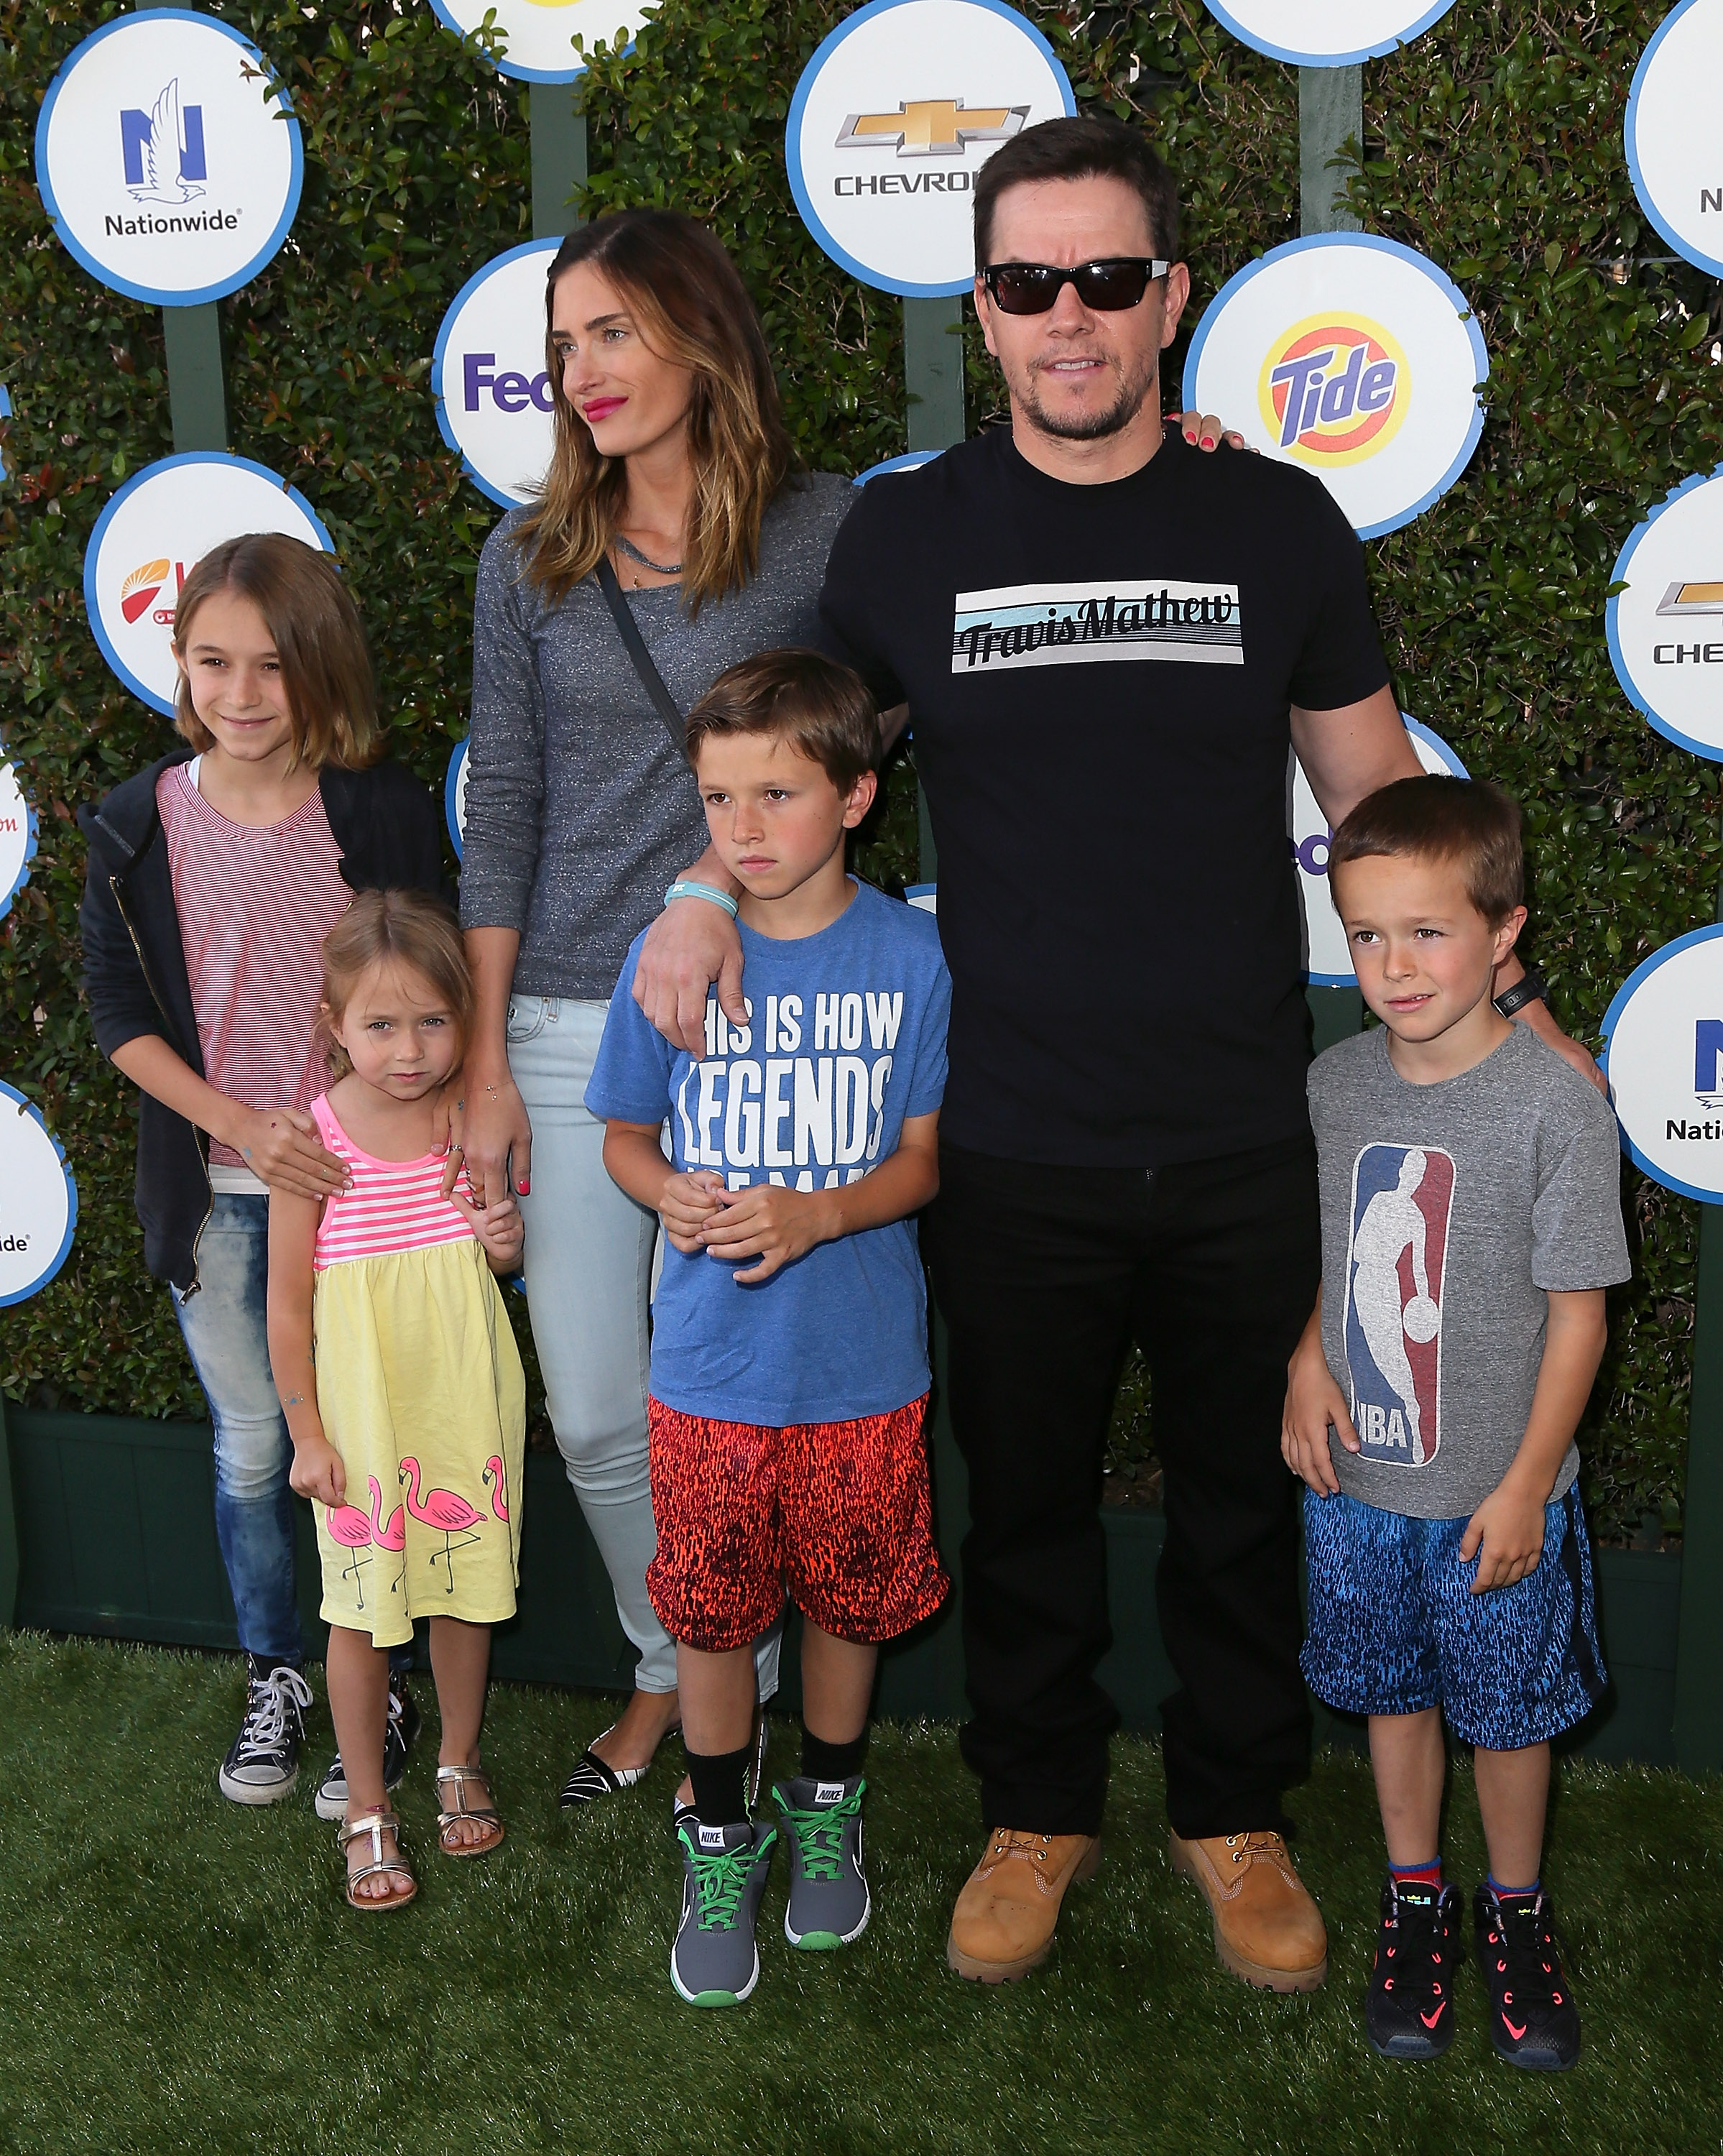 Mark Wahlberg, accompagné de sa femme, Rhea Durham, et de leurs enfants, a honoré l'événement Safe Kids Day présenté par Nationwide à The Lot à West Hollywood, en Californie, le 26 avril 2015. | Source : Getty Images